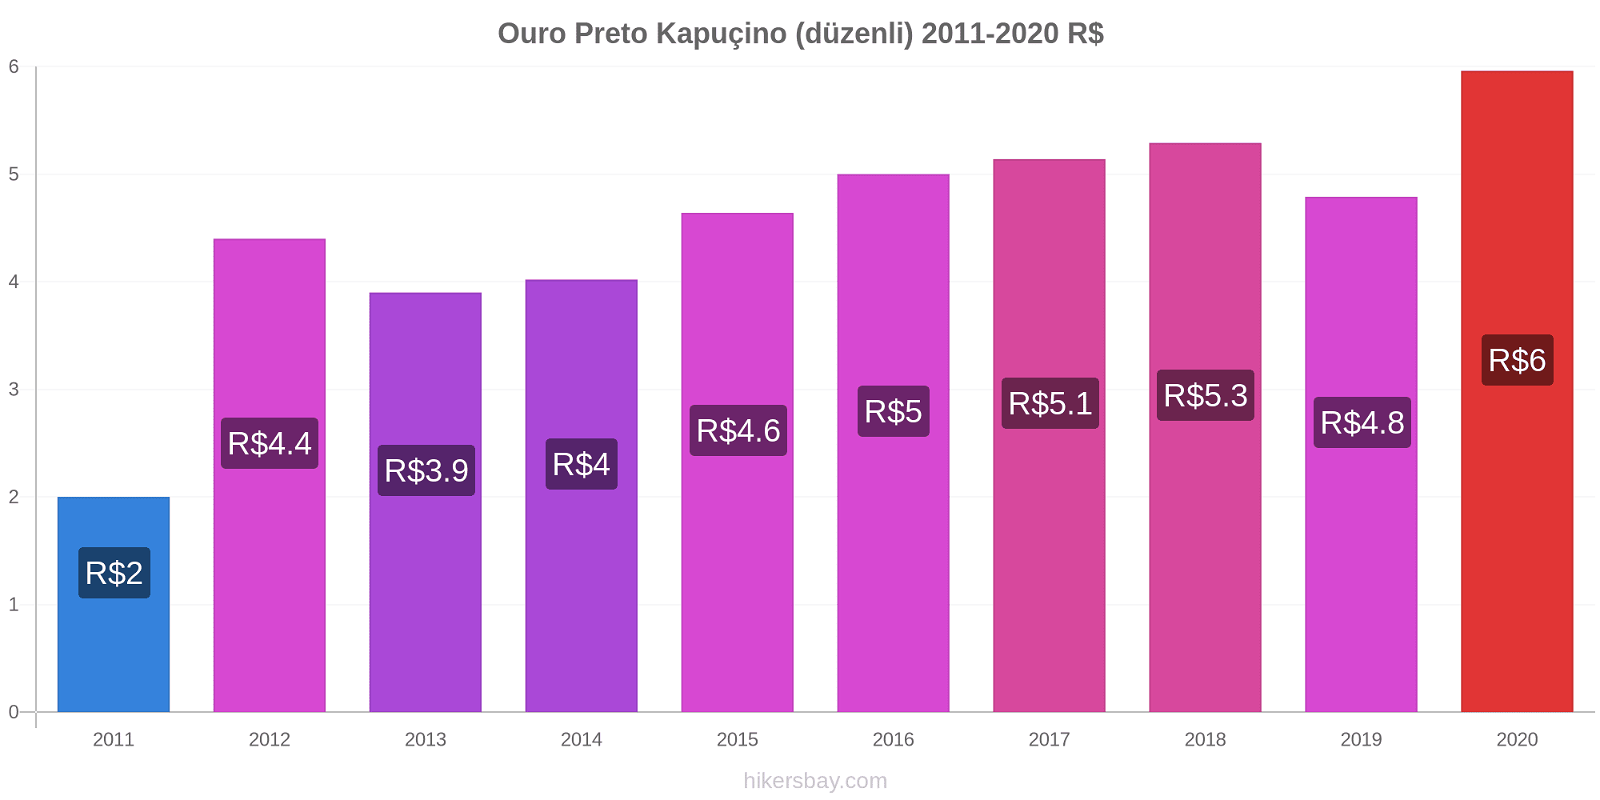 Ouro Preto fiyat değişiklikleri Kapuçino (düzenli) hikersbay.com